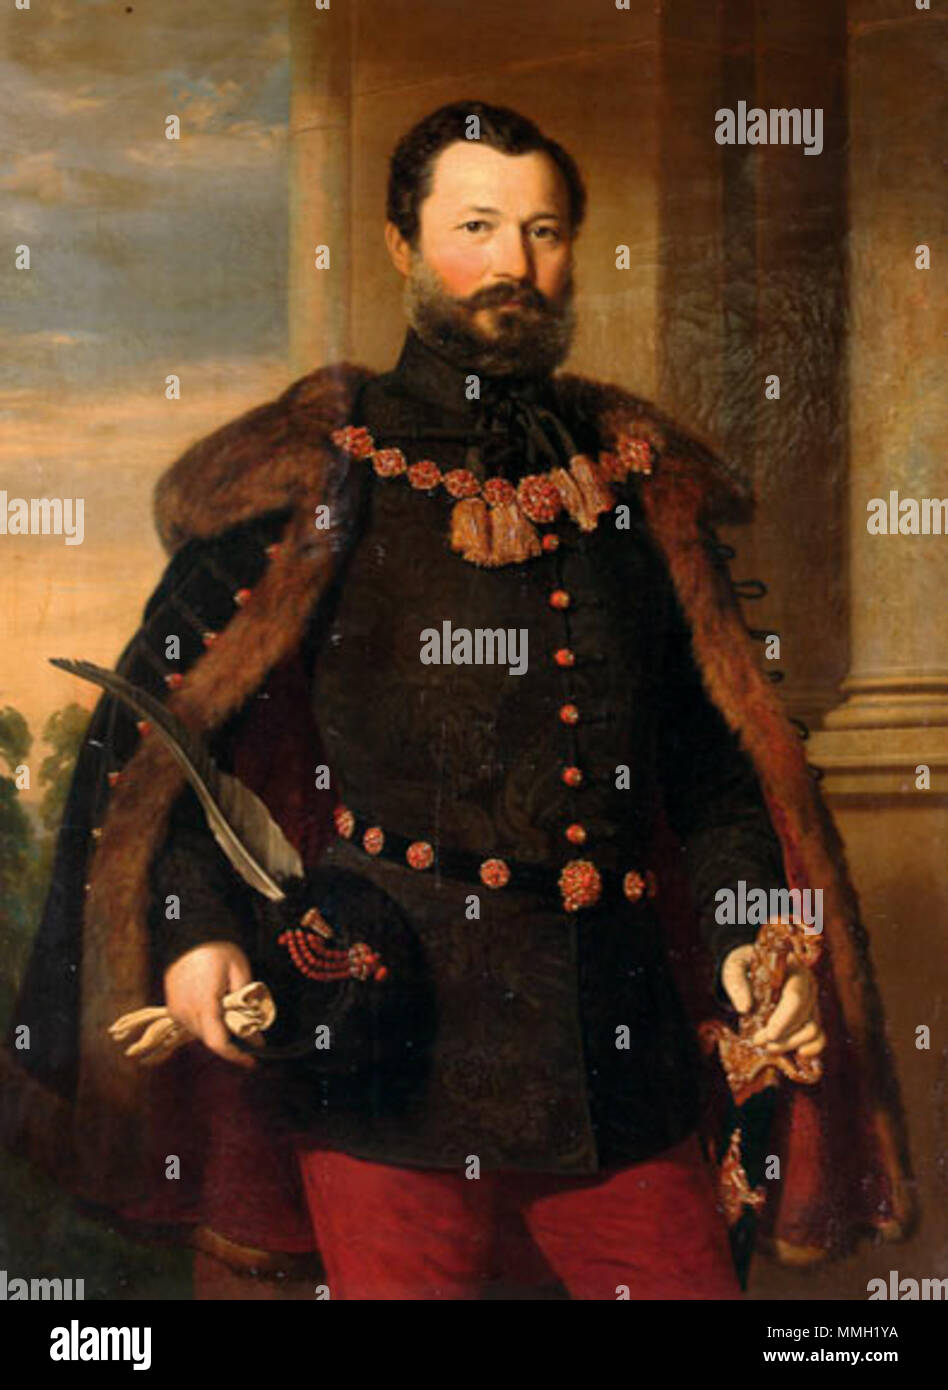 Barabás Ritratto di un uomo nobile e 1859 Foto Stock